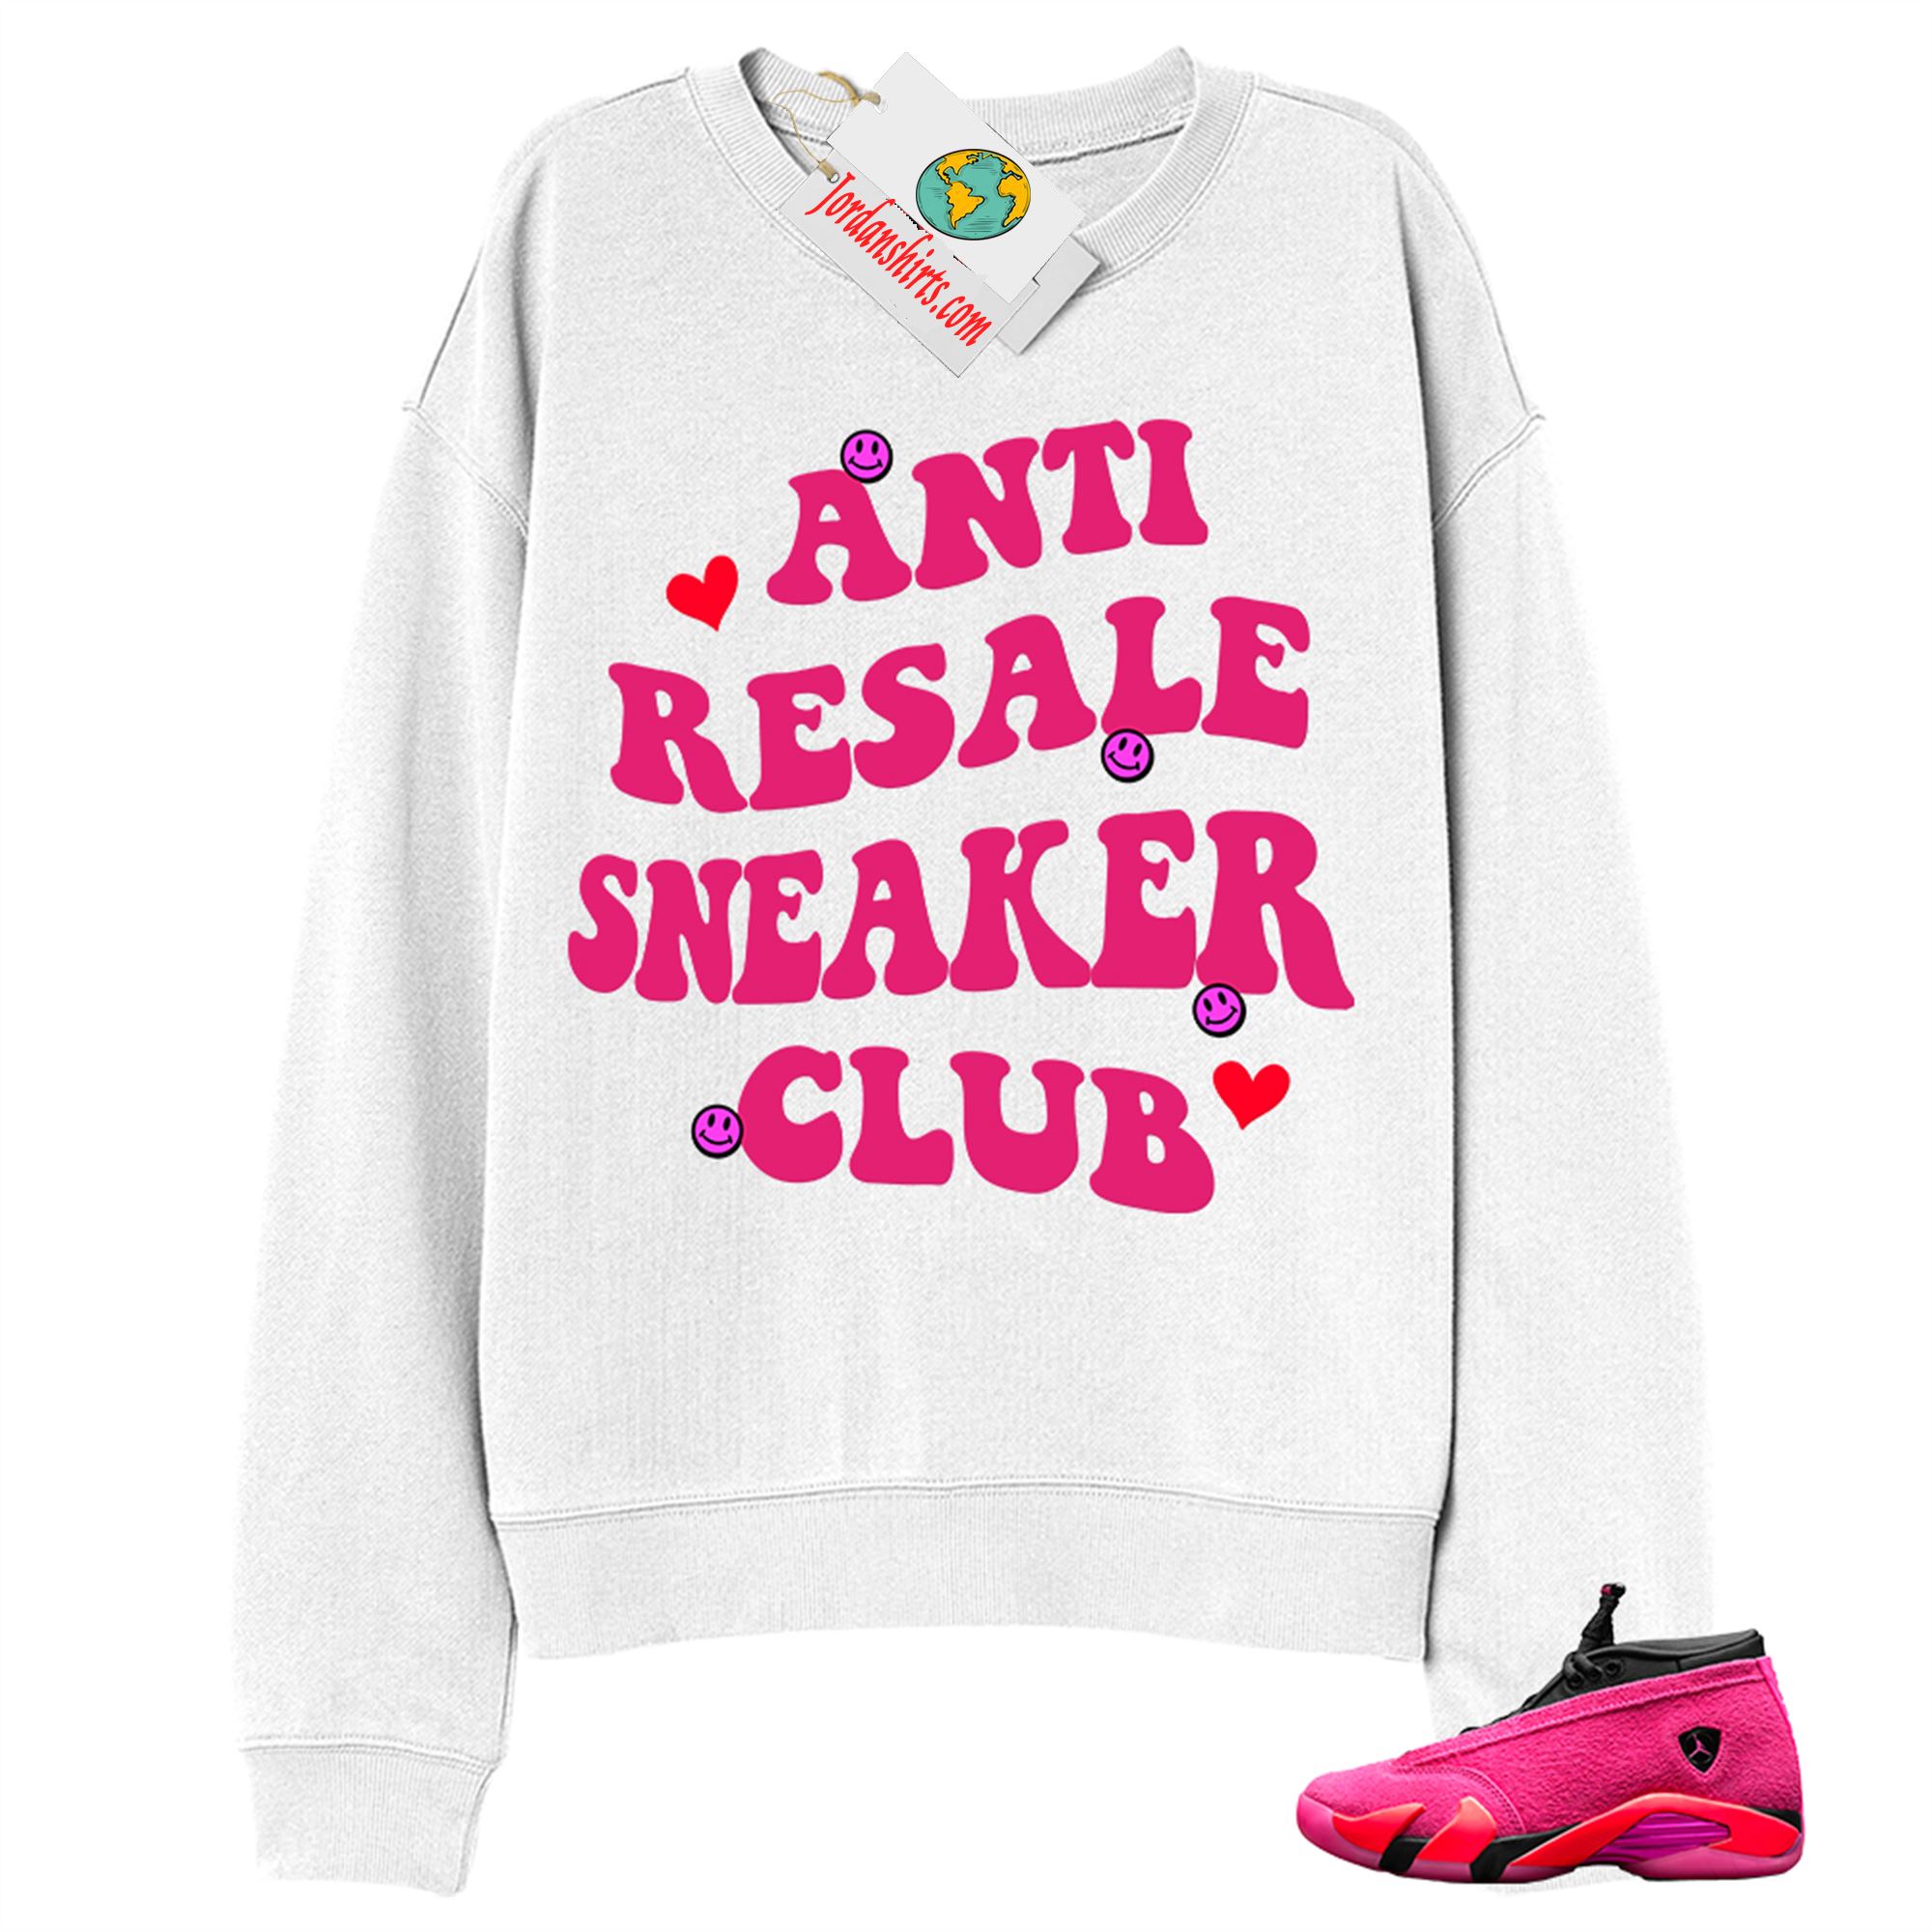 Jordan 14 Sweatshirt, Anti Resale Sneaker Club White Sweatshirt Air Jordan 14 Wmns Shocking Pink 14s Size Up To 5xl